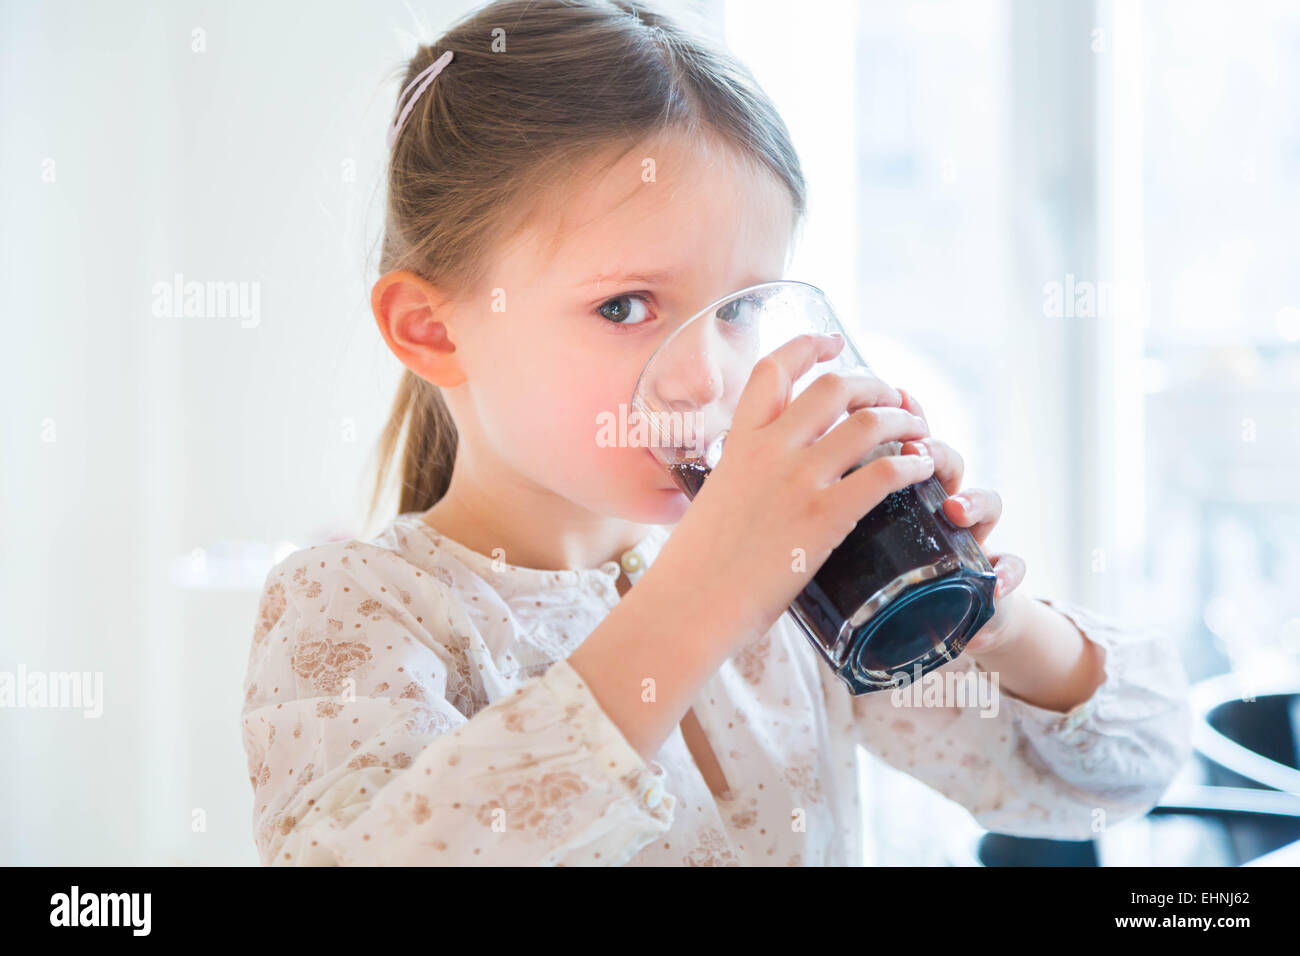 5 anno-vecchia ragazza di bere una bibita analcolica. Foto Stock